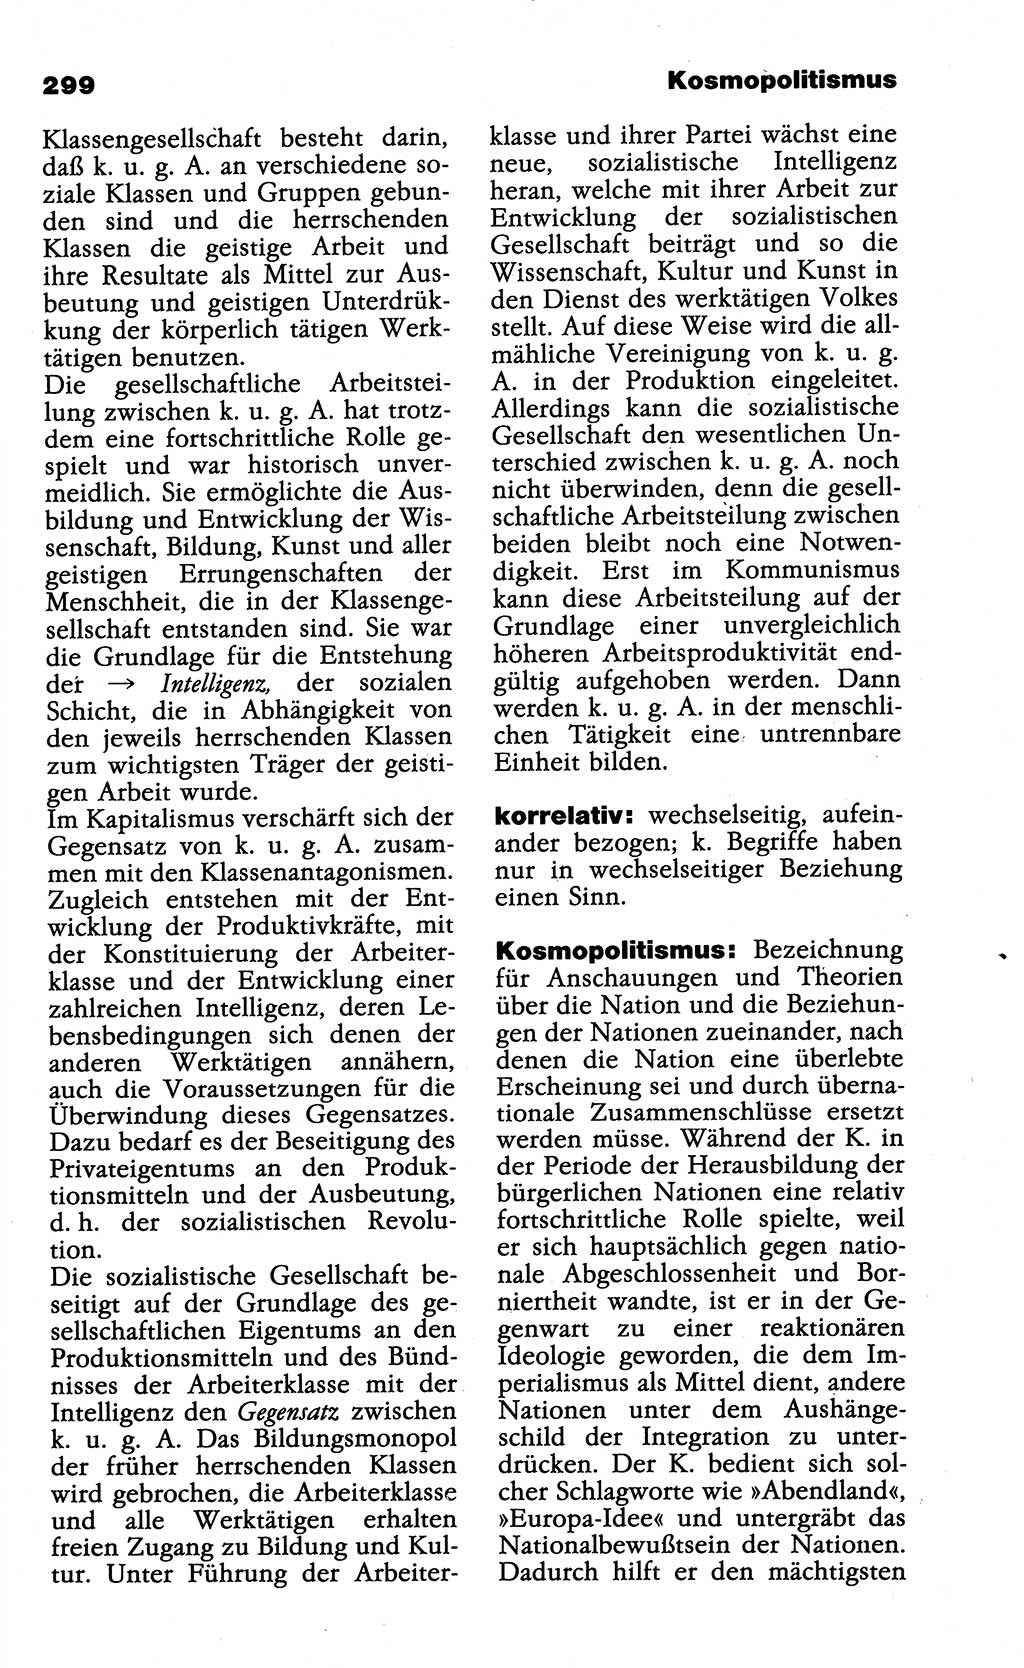 Wörterbuch der marxistisch-leninistischen Philosophie [Deutsche Demokratische Republik (DDR)] 1985, Seite 299 (Wb. ML Phil. DDR 1985, S. 299)